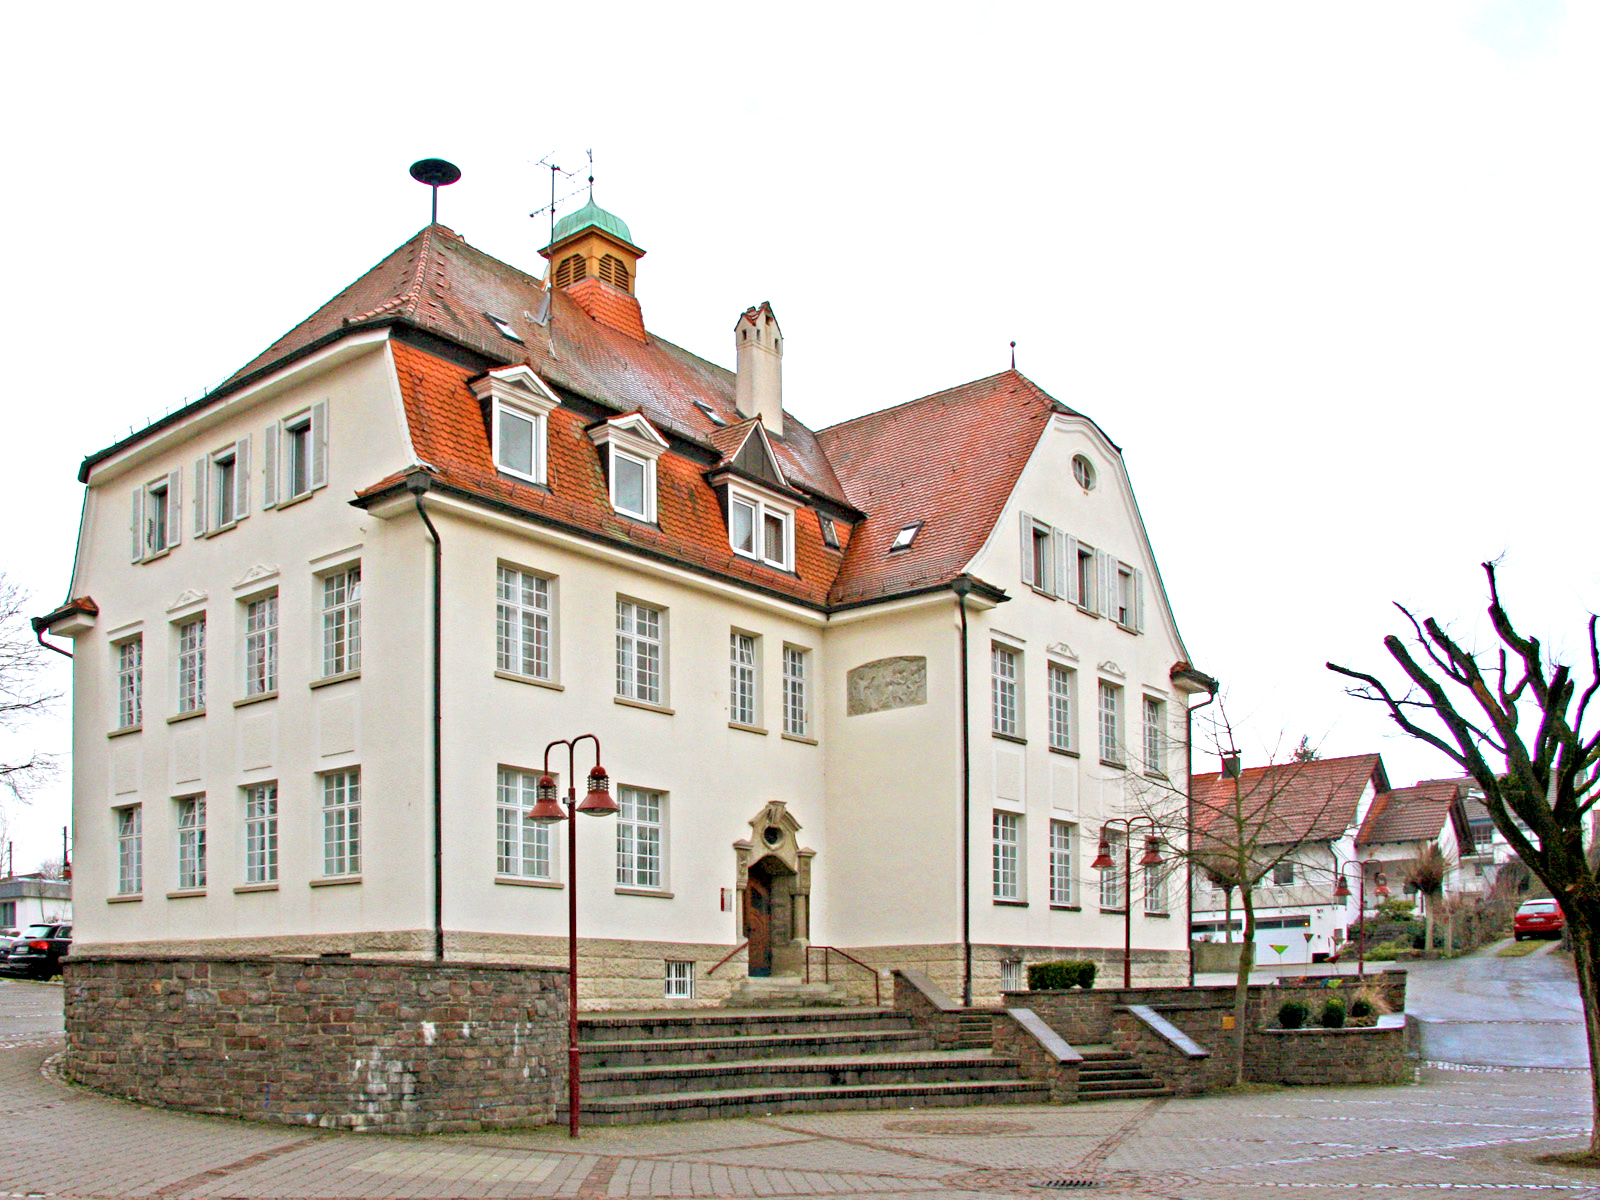  Musikschule-Haus-Kramer 